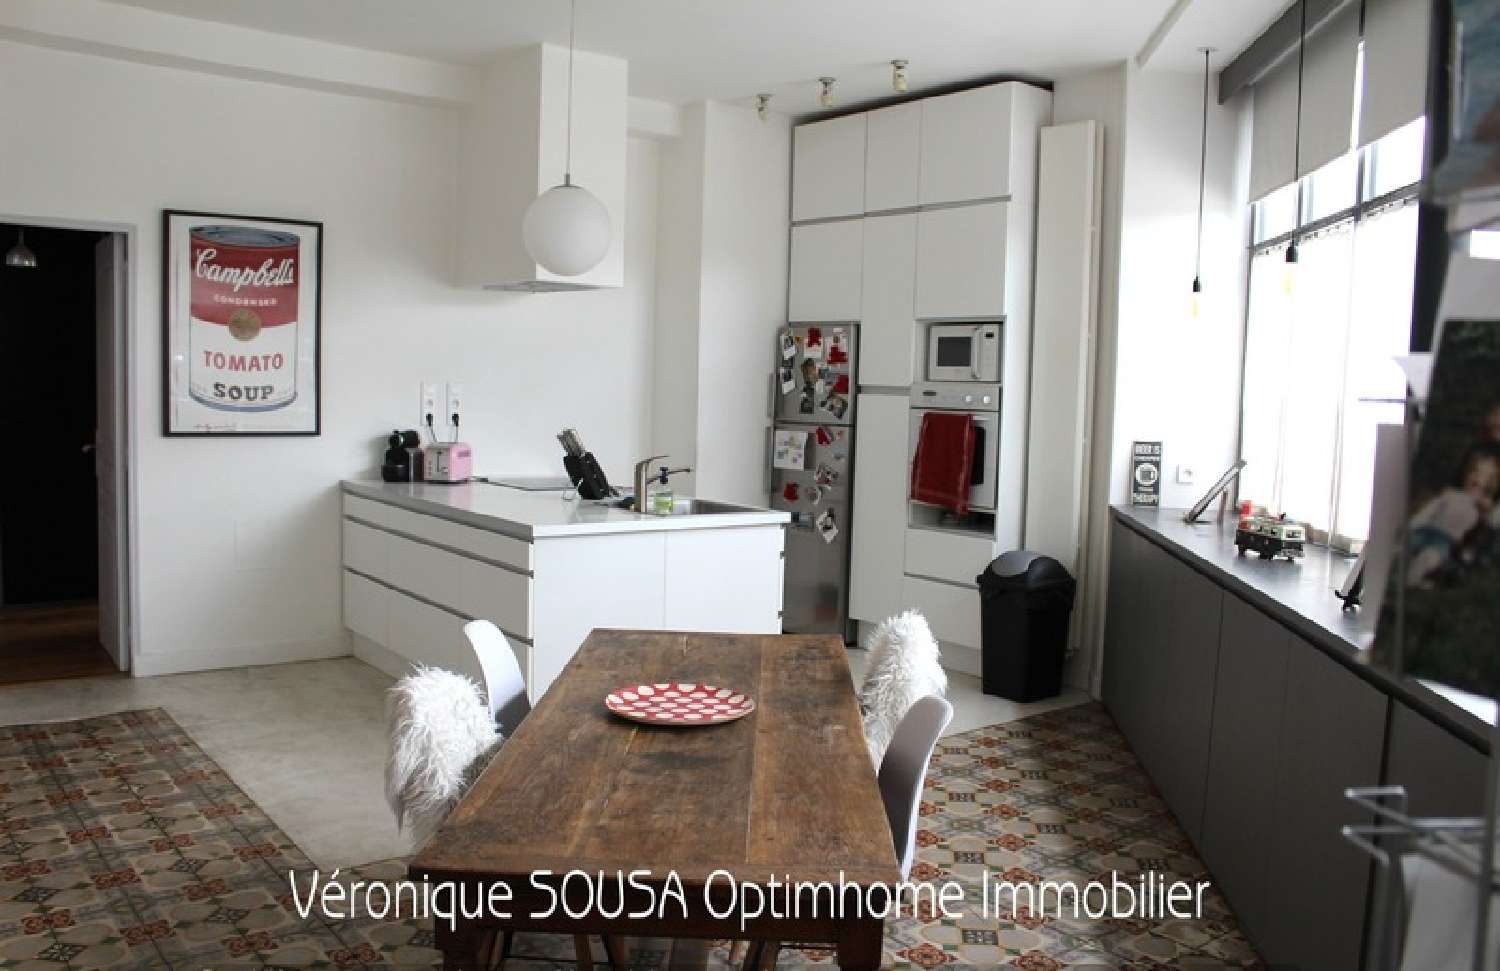  à vendre appartement Saint-Germain-en-Laye Yvelines 2